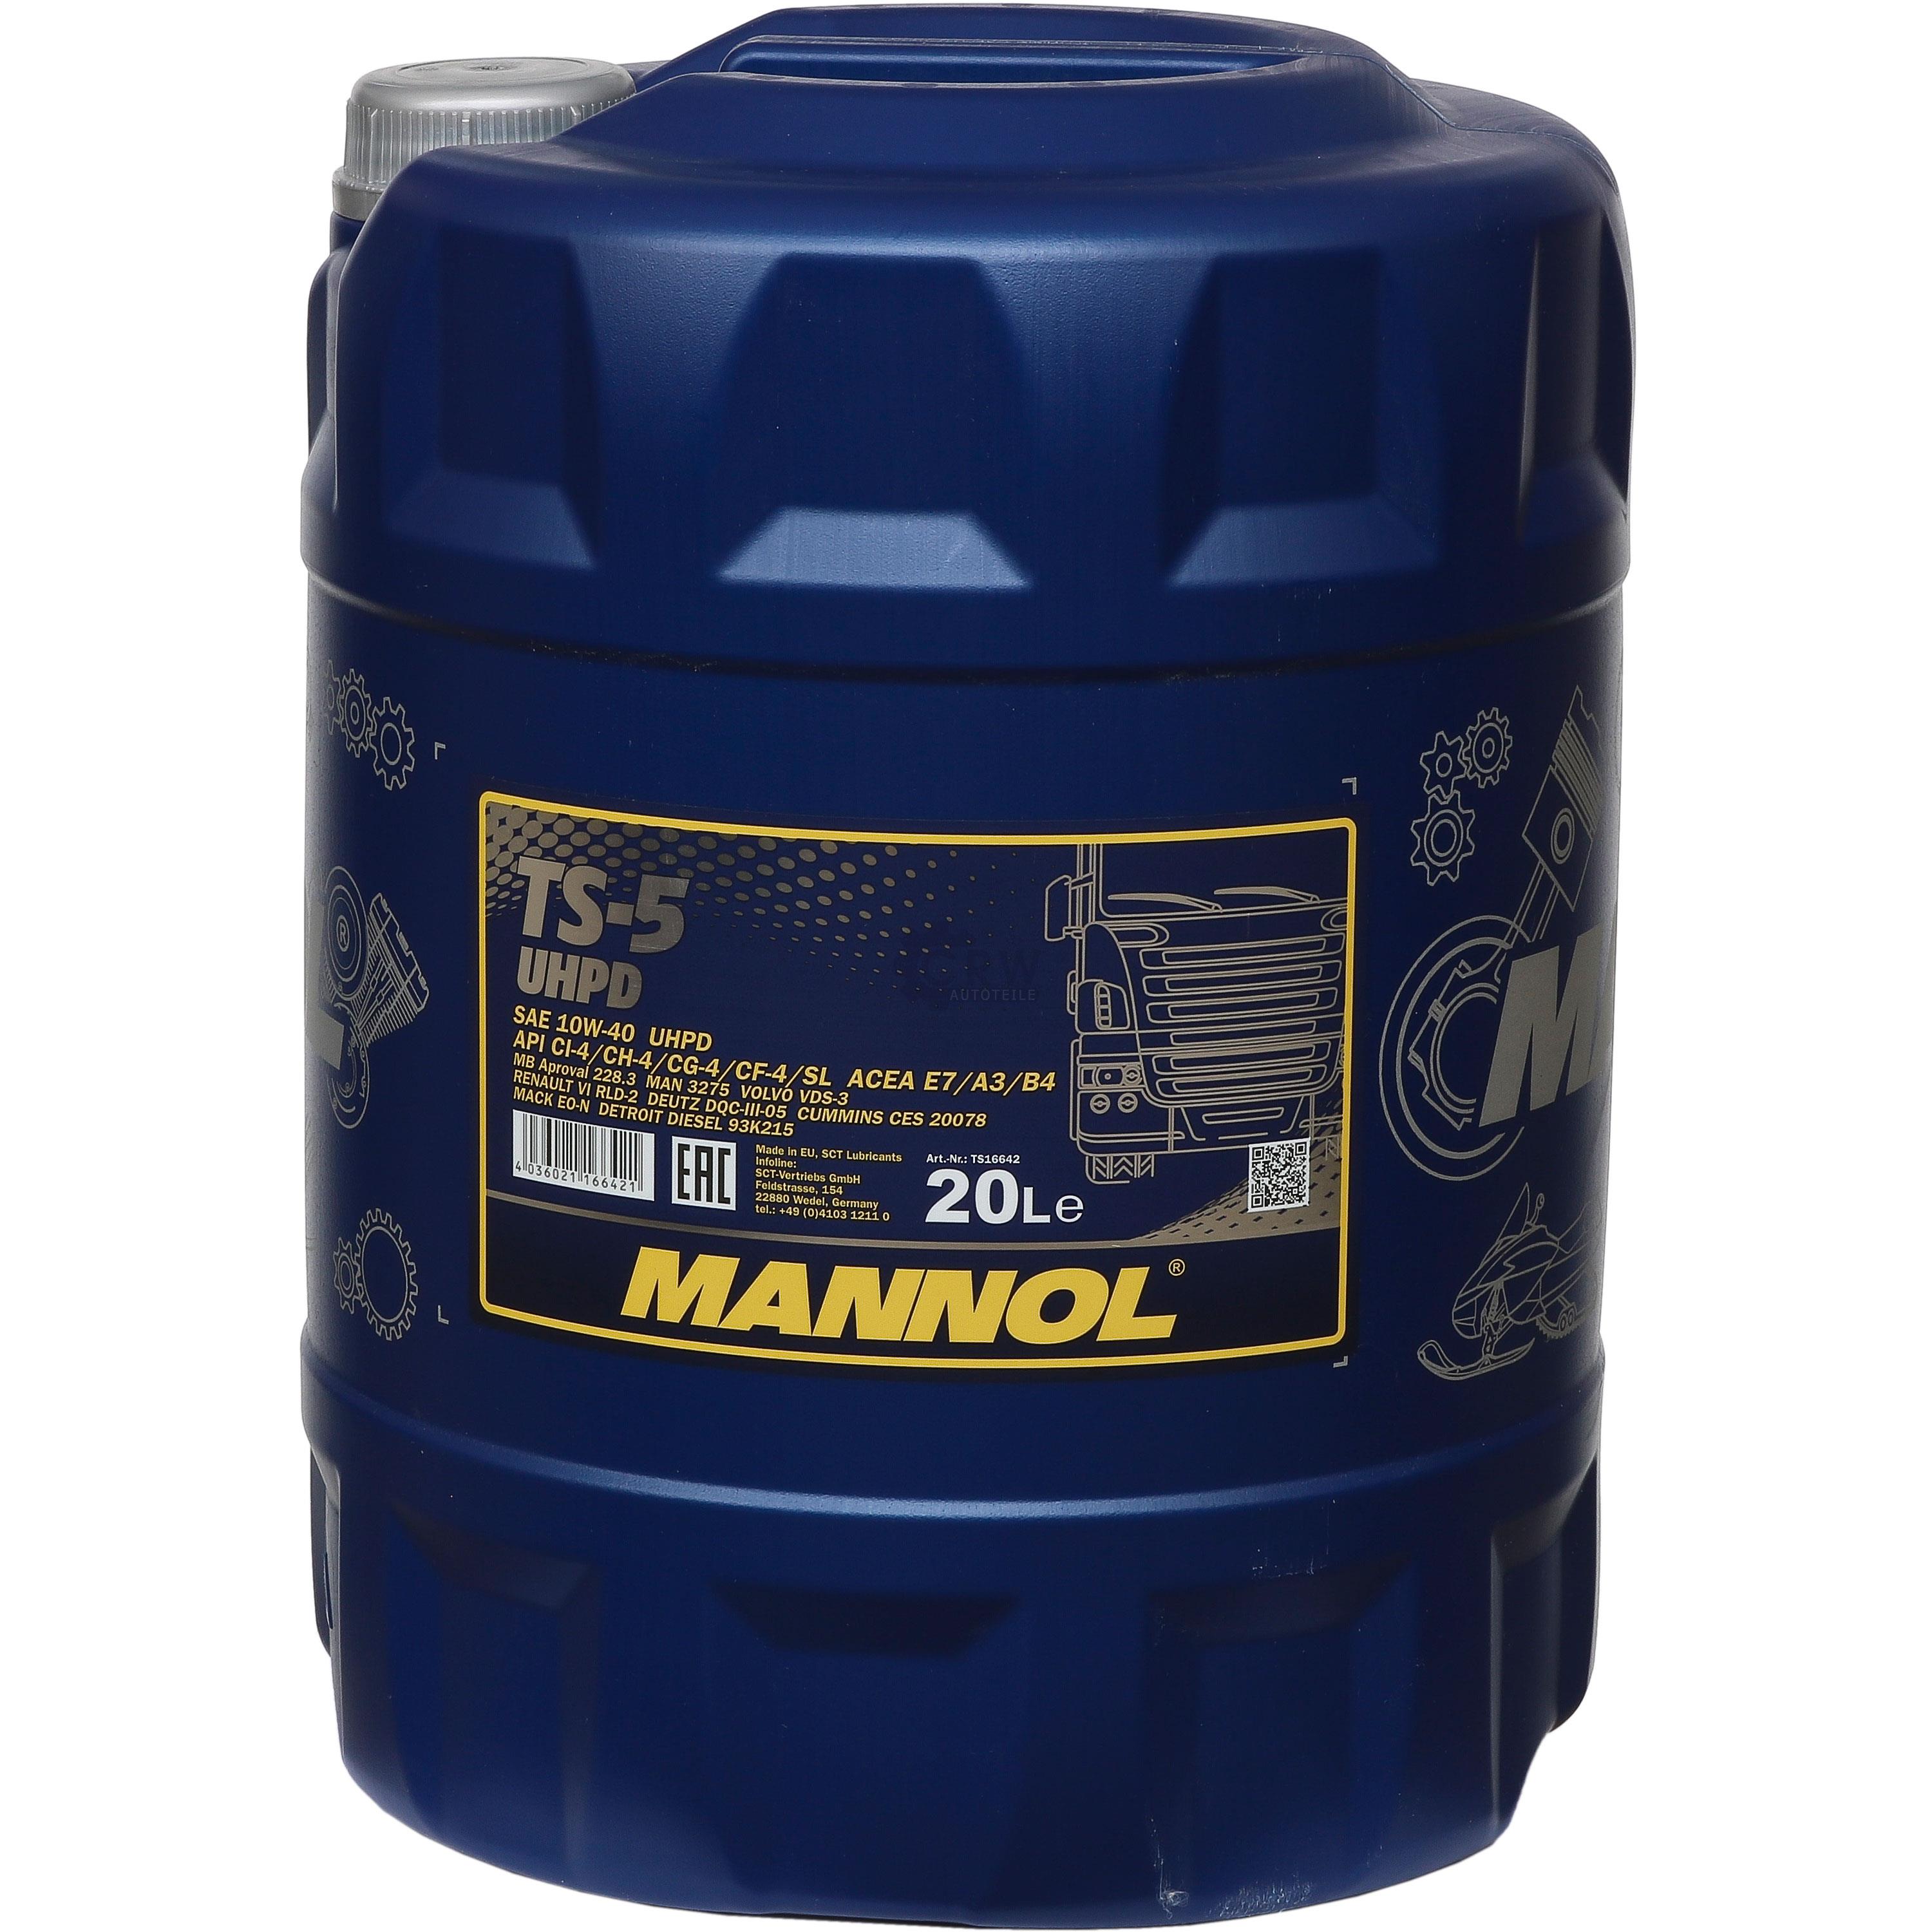 20 Liter Orignal MANNOL Motoröl TS-5 UHPD 10W-40 API Engine Oil Öl